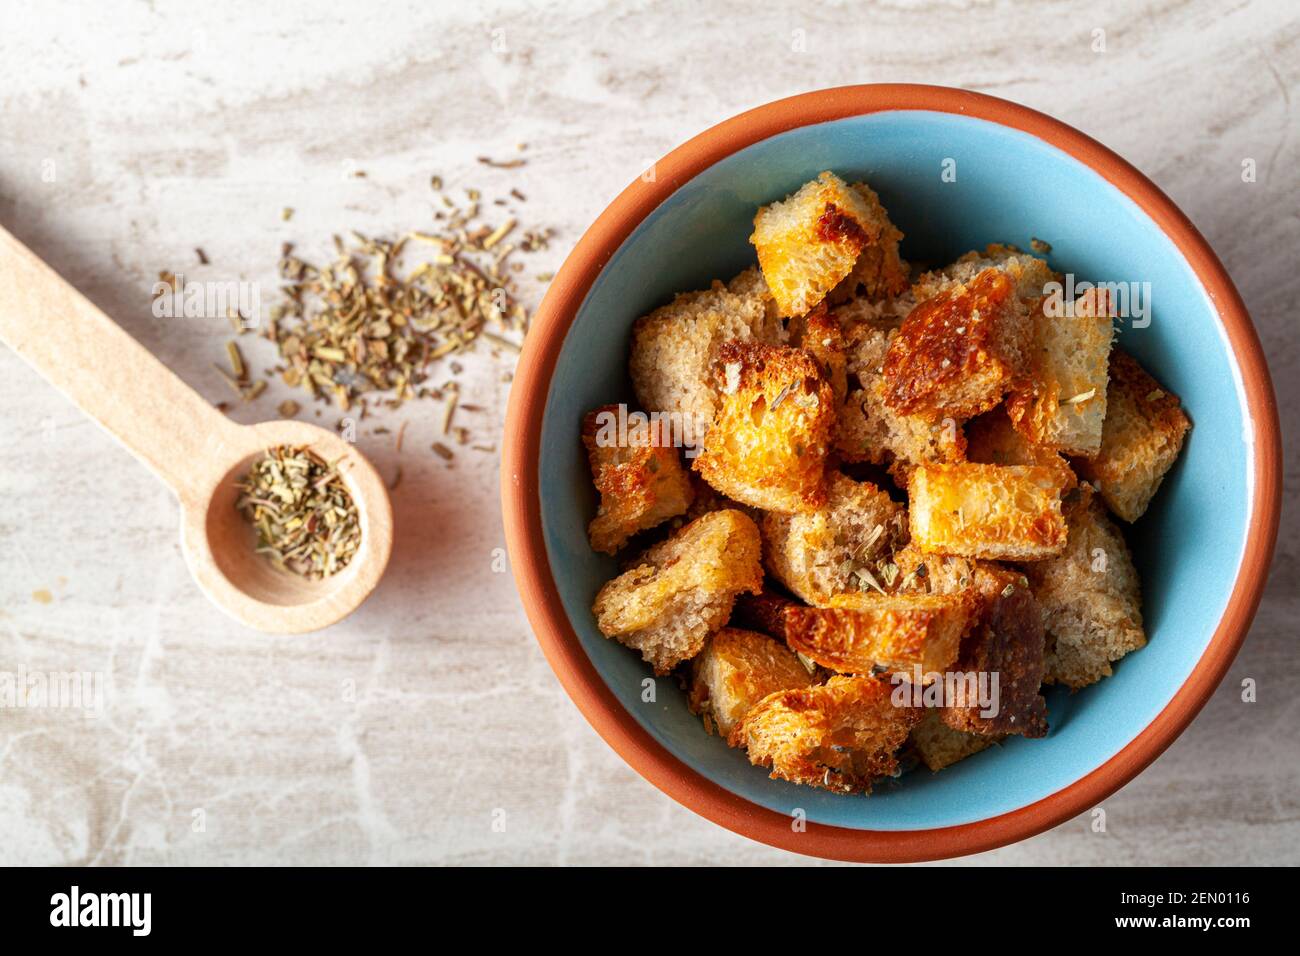 Nahaufnahme flach Lay Bild von hausgemachten Croutons in einer Schüssel.  Die Brotwürfel wurden im Ofen knusprig gebacken und in Olivenöl oder Butter  getaucht und fertig gestellt Stockfotografie - Alamy